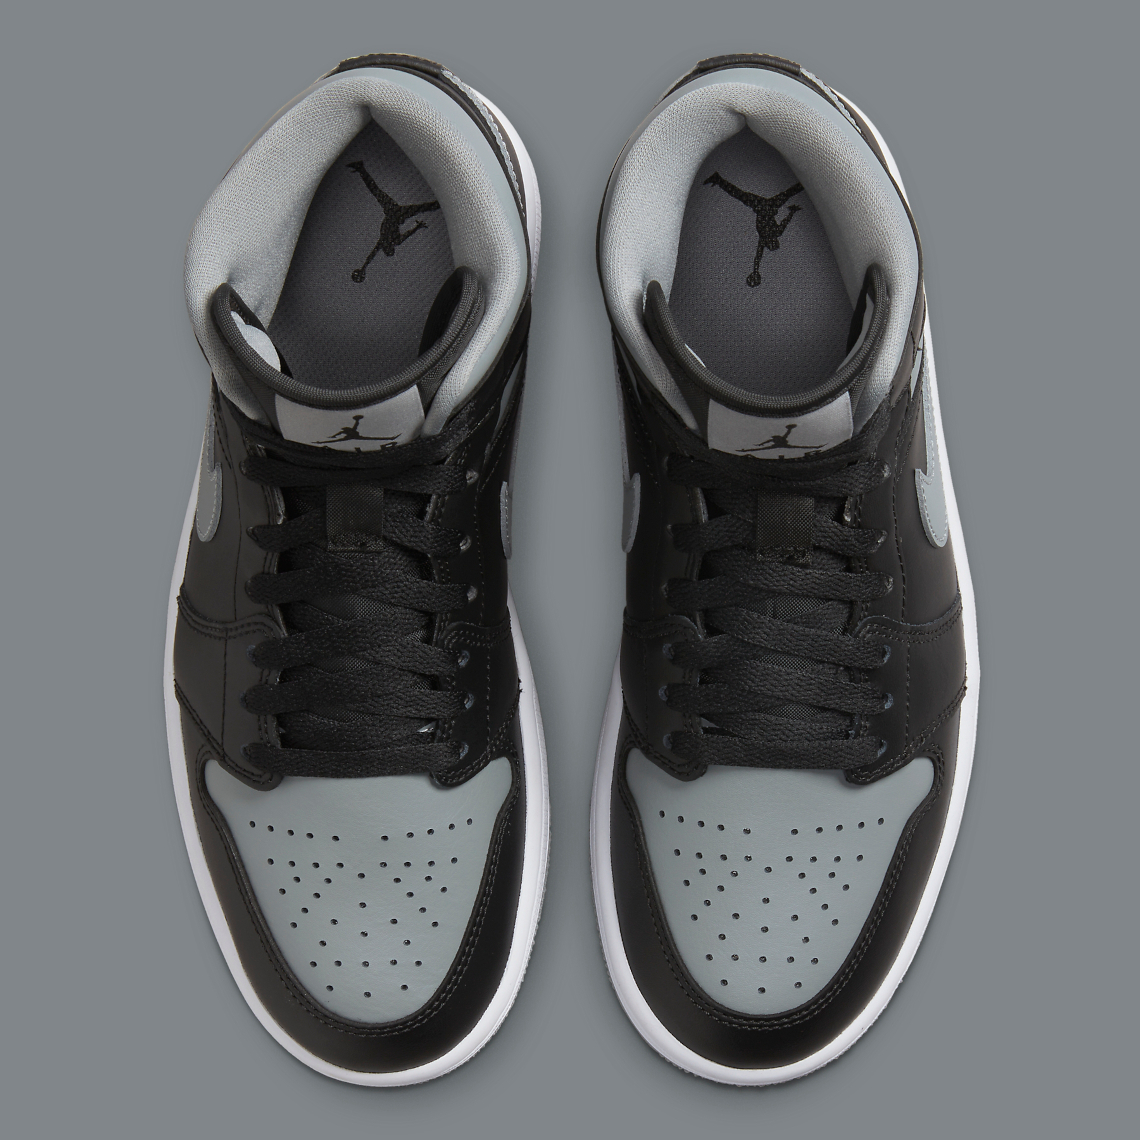 Jordan Air blackred Jordan 1 Hi H2H NRG CHI sneakers